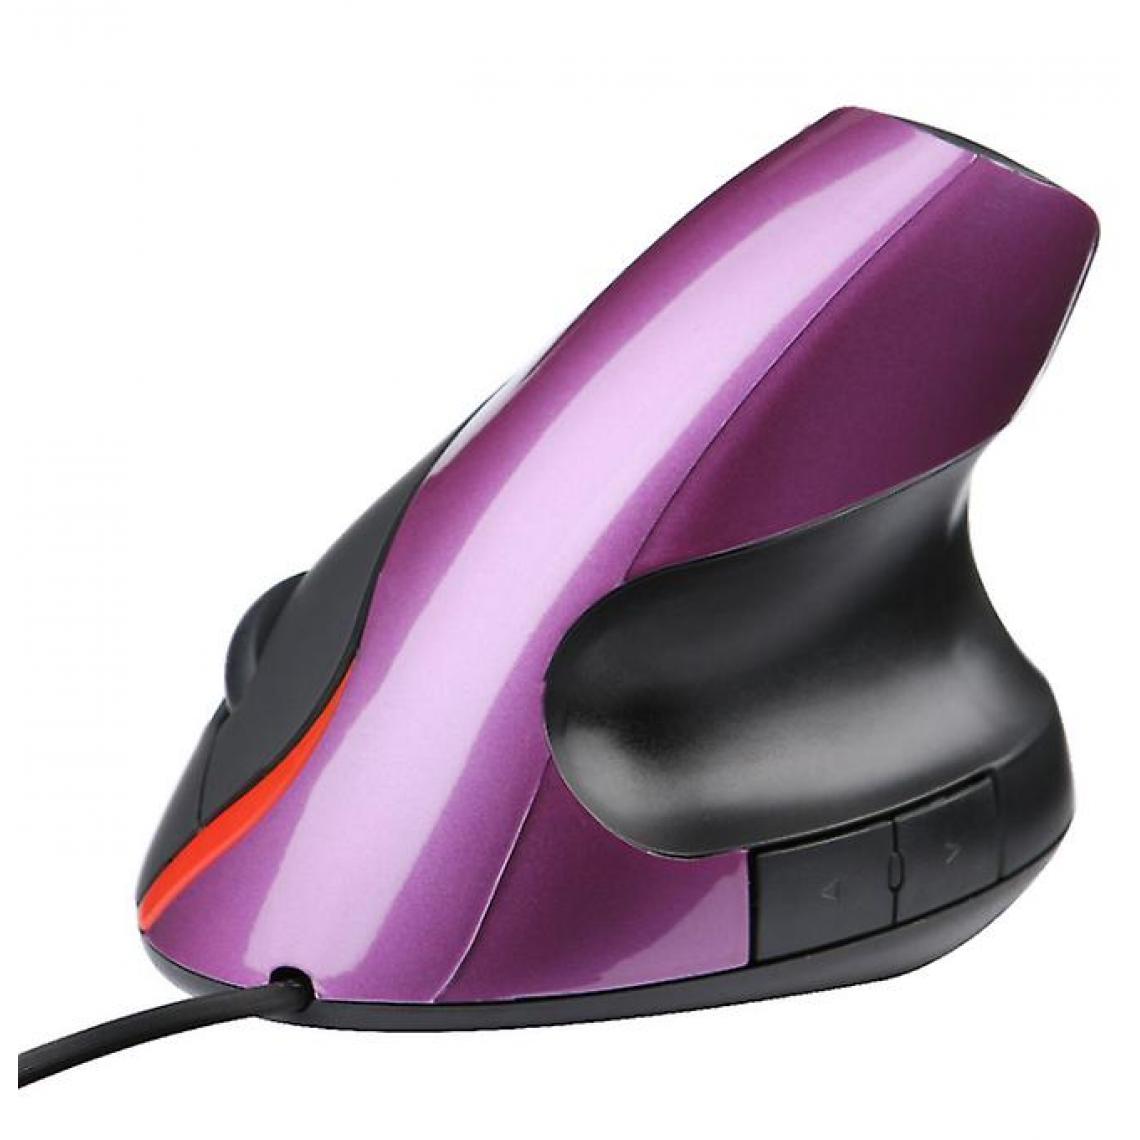 Universal - Souris verticale filaire 2.4G USB PC ordinateurs portables souris défilante optique, violet(Violet) - Souris